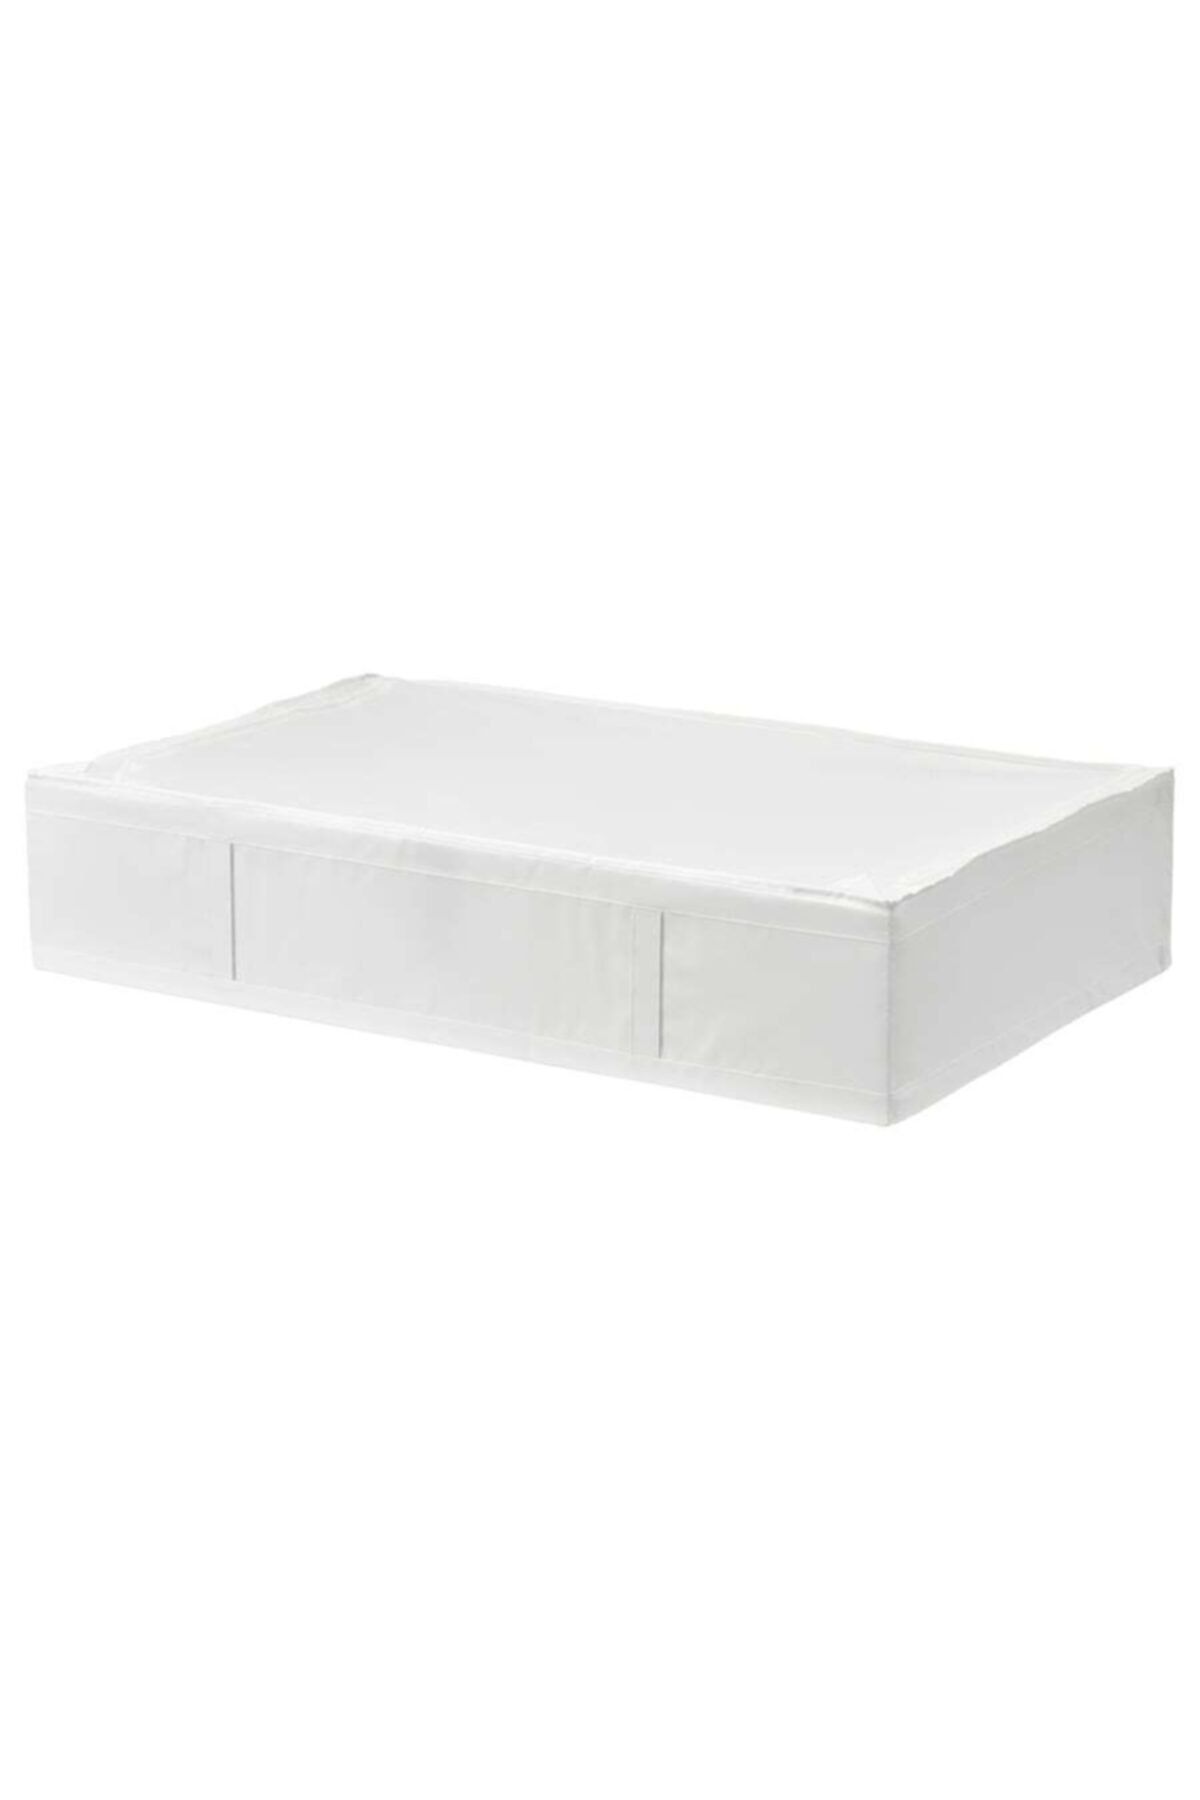 IKEA Skubb 93x55x19 Beyaz Hurç Yatak Altı Yastık Çarşaf Nevresim Giysi Saklama Kutusu Hurç Kutu